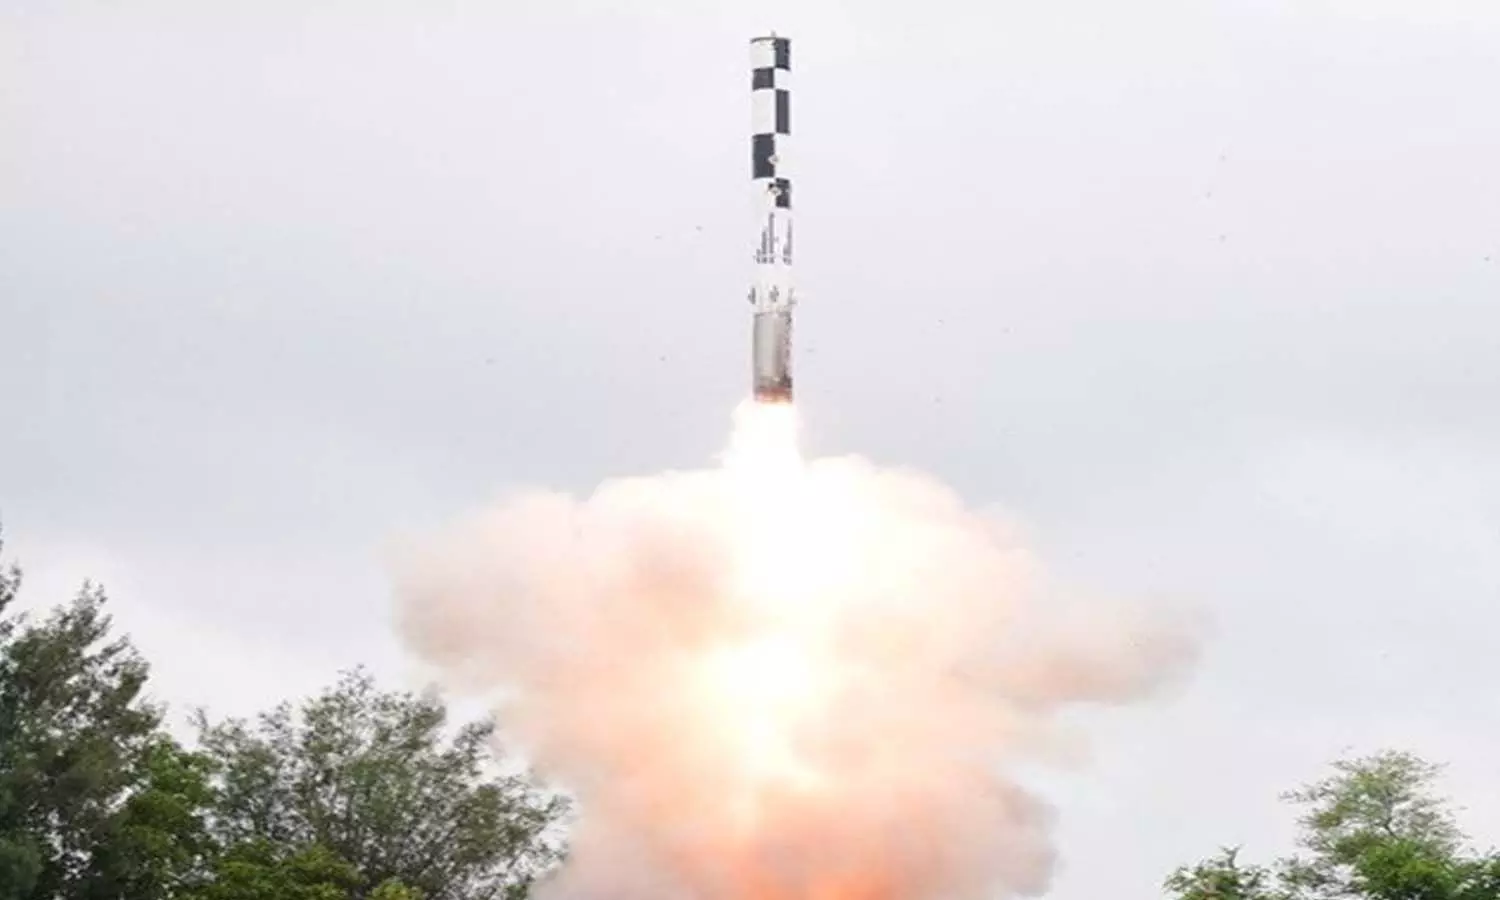 Supersonic Cruise Missile Test: दुनिया की सबसे तेज सुपरसोनिक क्रूज मिसाइल का हुआ सफल परीक्षण, स्वदेशी सीकर एंड बूस्टर लगे ब्रह्मोस से नौसेना की बढ़ेगी दुगुनी ताकत